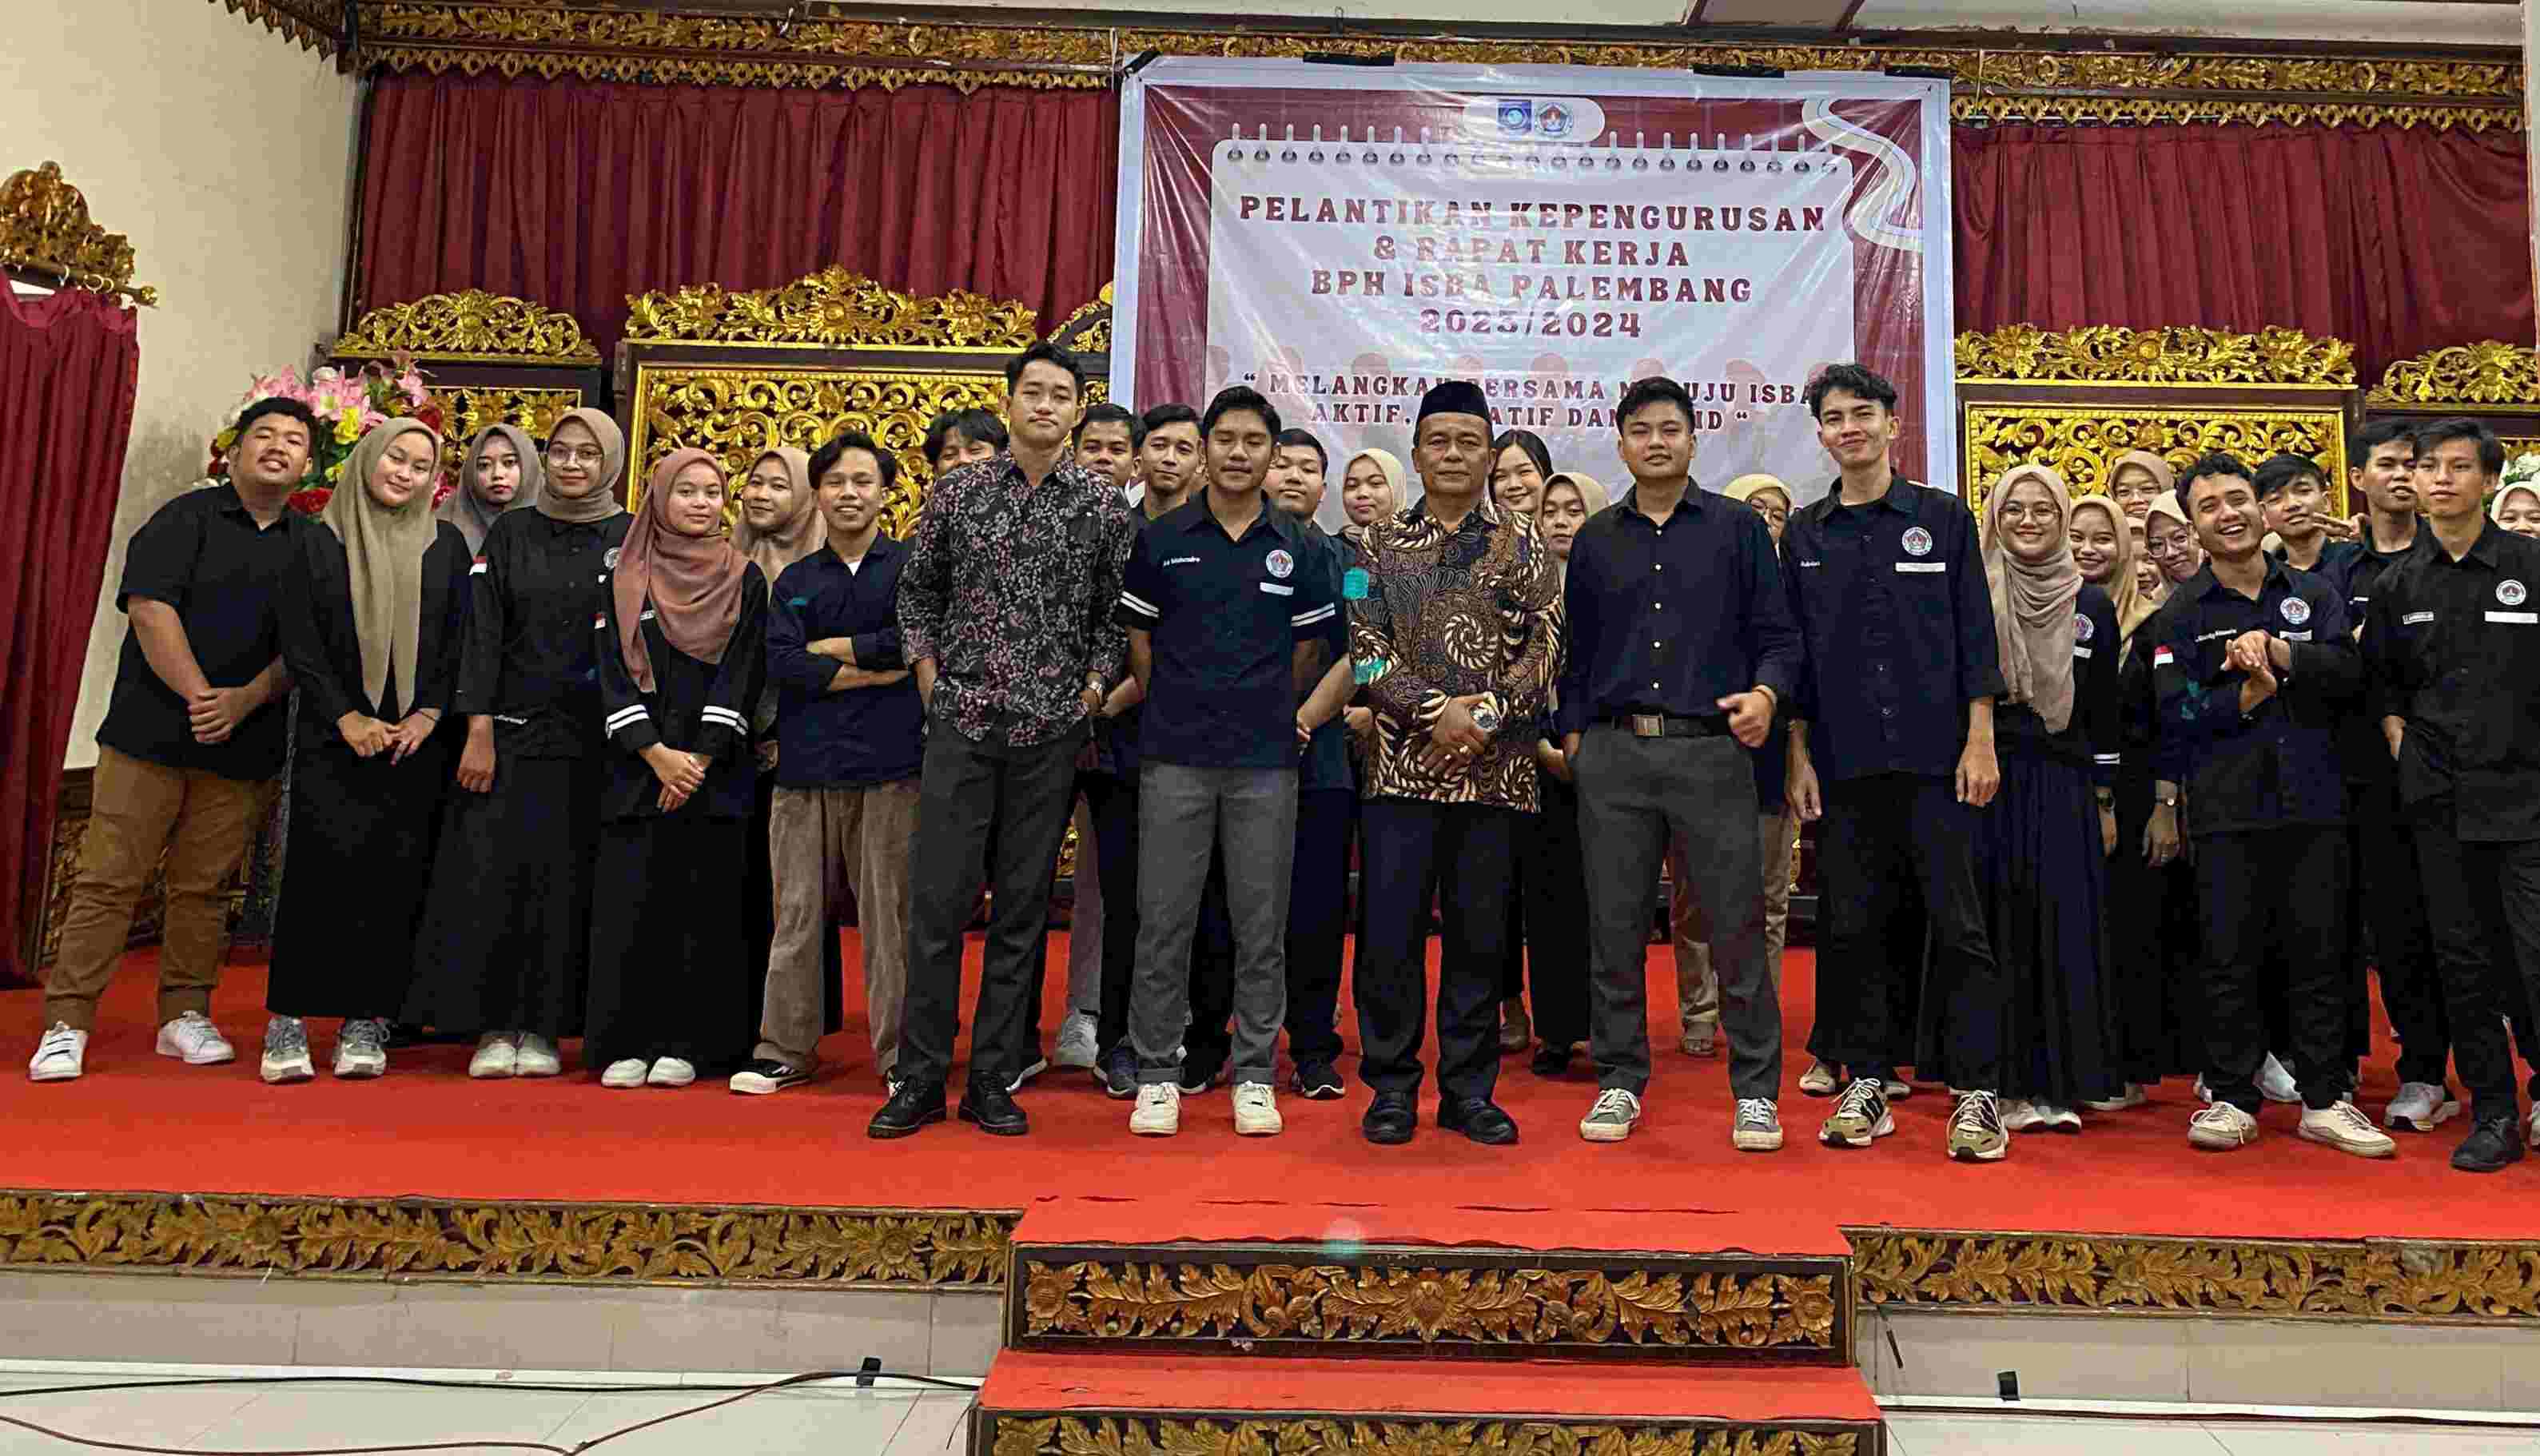 Leo Mahendrata Jabat Ketua ISBA Palembang 2023-2024, Boy Yandra: Momentum Lahirkan Inovasi dan Majukan Daerah